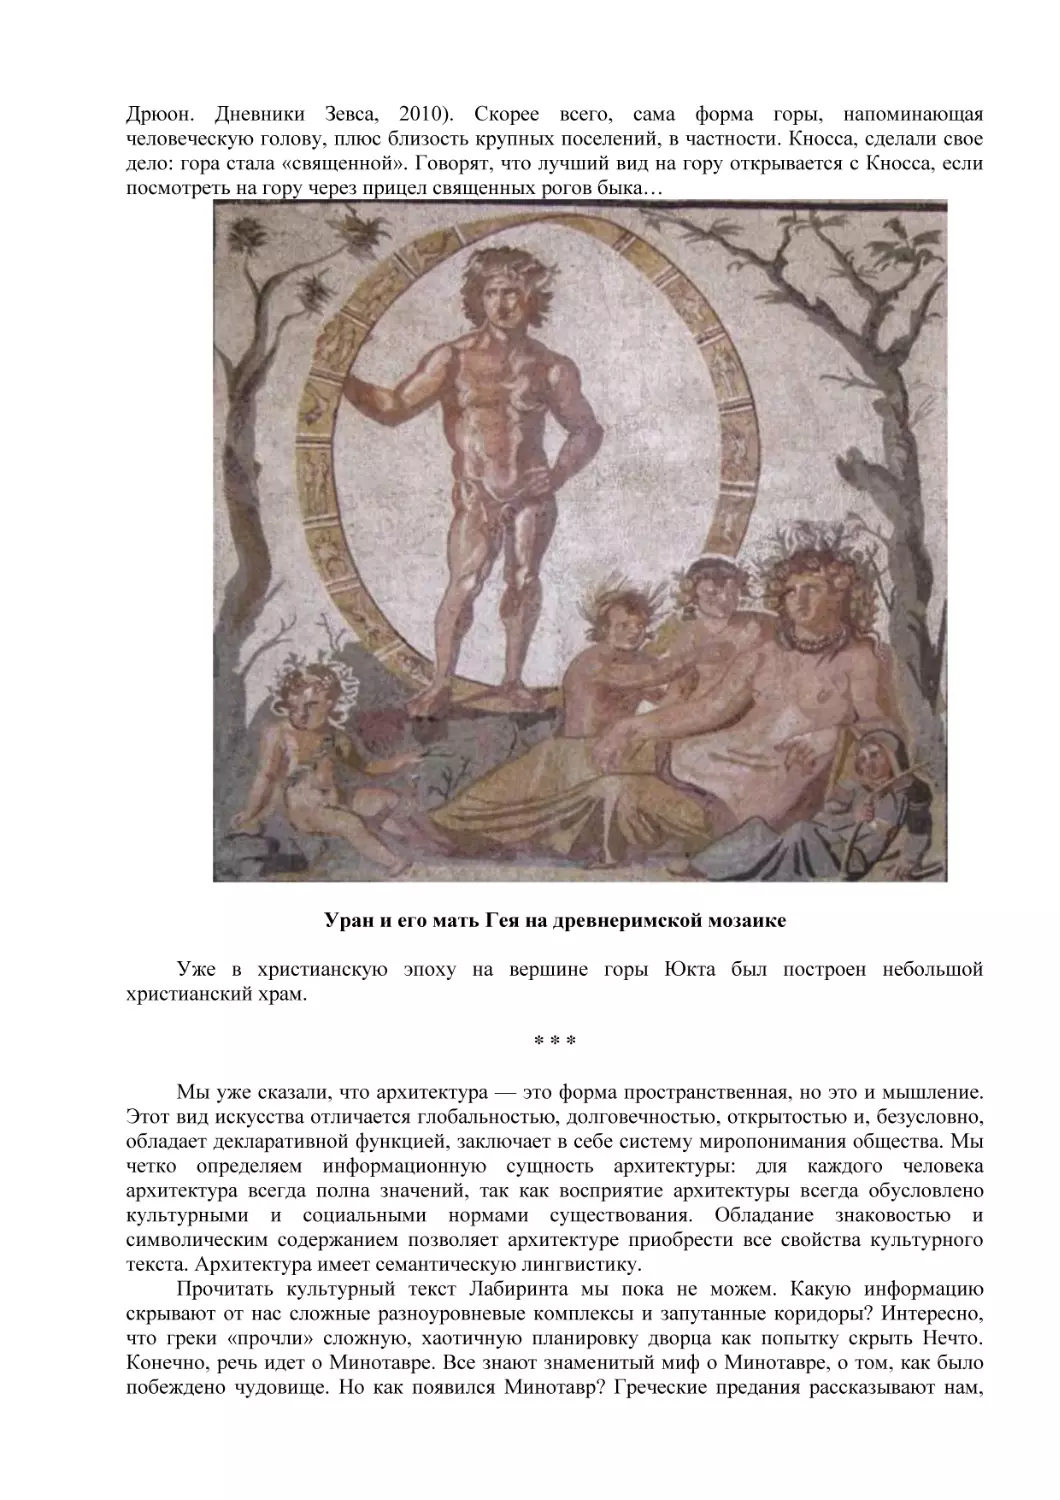 Уран и его мать Гея на древнеримской мозаике
* * *